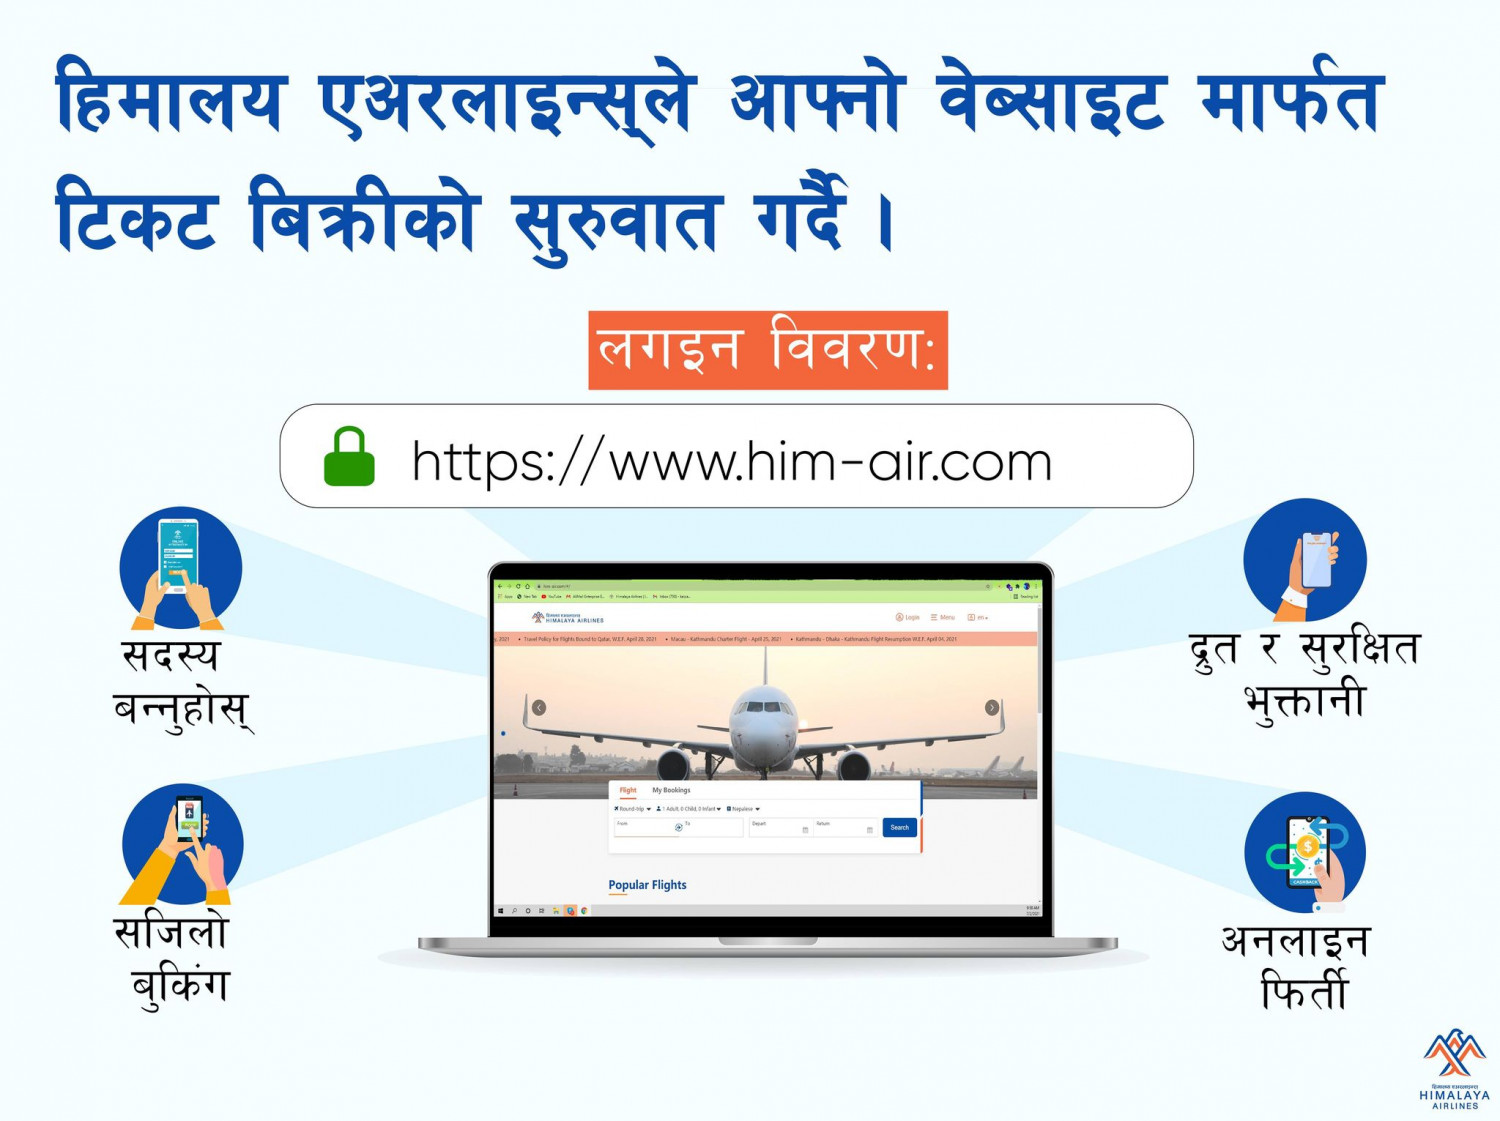 हिमालय एयरलाइन्सको टिकट वेबसाइटबाटै लिन पाइने